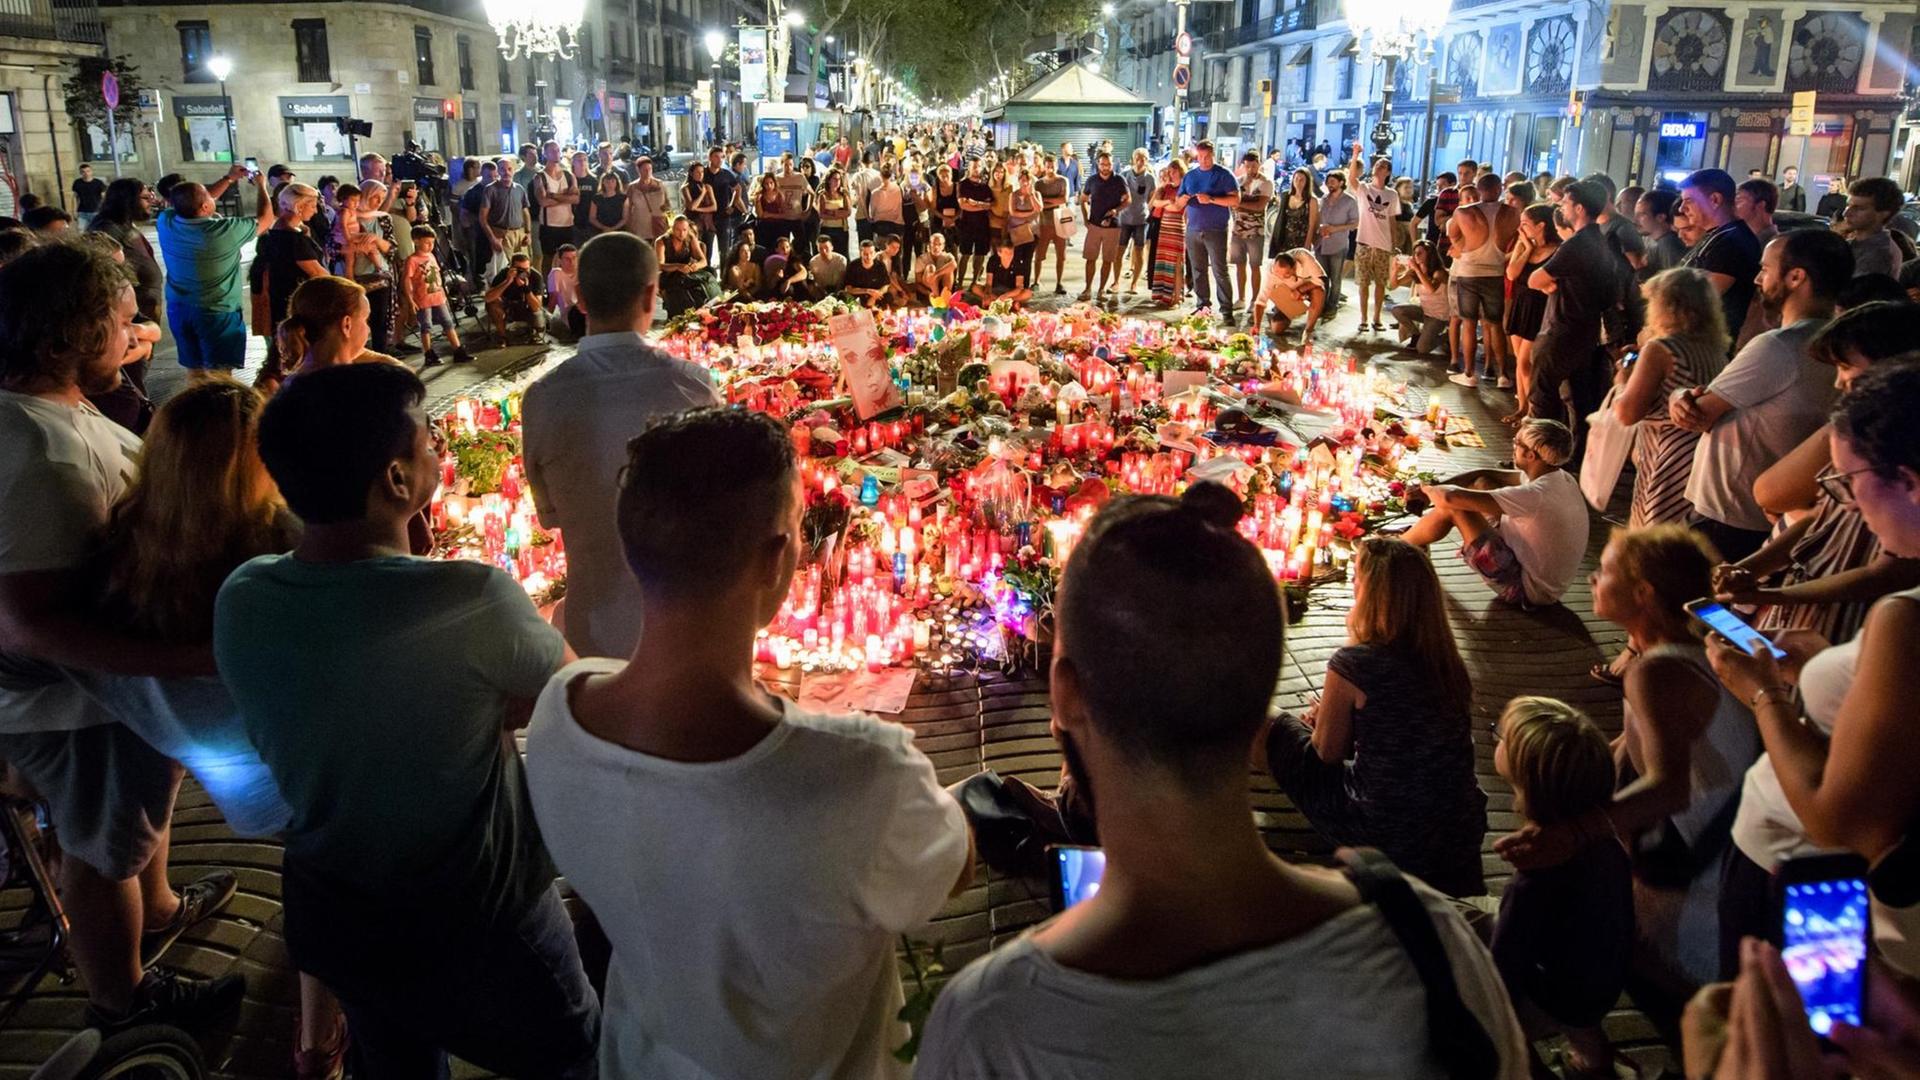 Zahlreiche Menschen stehen am 19.08.2017 auf der Flaniermeile Las Ramblas in Barcelona (Spanien) im Kreis um niedergelegte Blumen und Kerzen. Auf der Straße war am 17.08. ein Lieferwagen in eine Menschenmenge gefahren. Bei dem Terroranschlag auf der Promenade wurden mindestens 13 Menschen getötet und zahlreiche verletzt. (zu dpa "Kerzen, Blumen und Stofftiere - Barcelona gedenkt der Terroropfer" vom 19.08.2017) Foto: Matthias Balk/dpa +++(c) dpa - Bildfunk+++